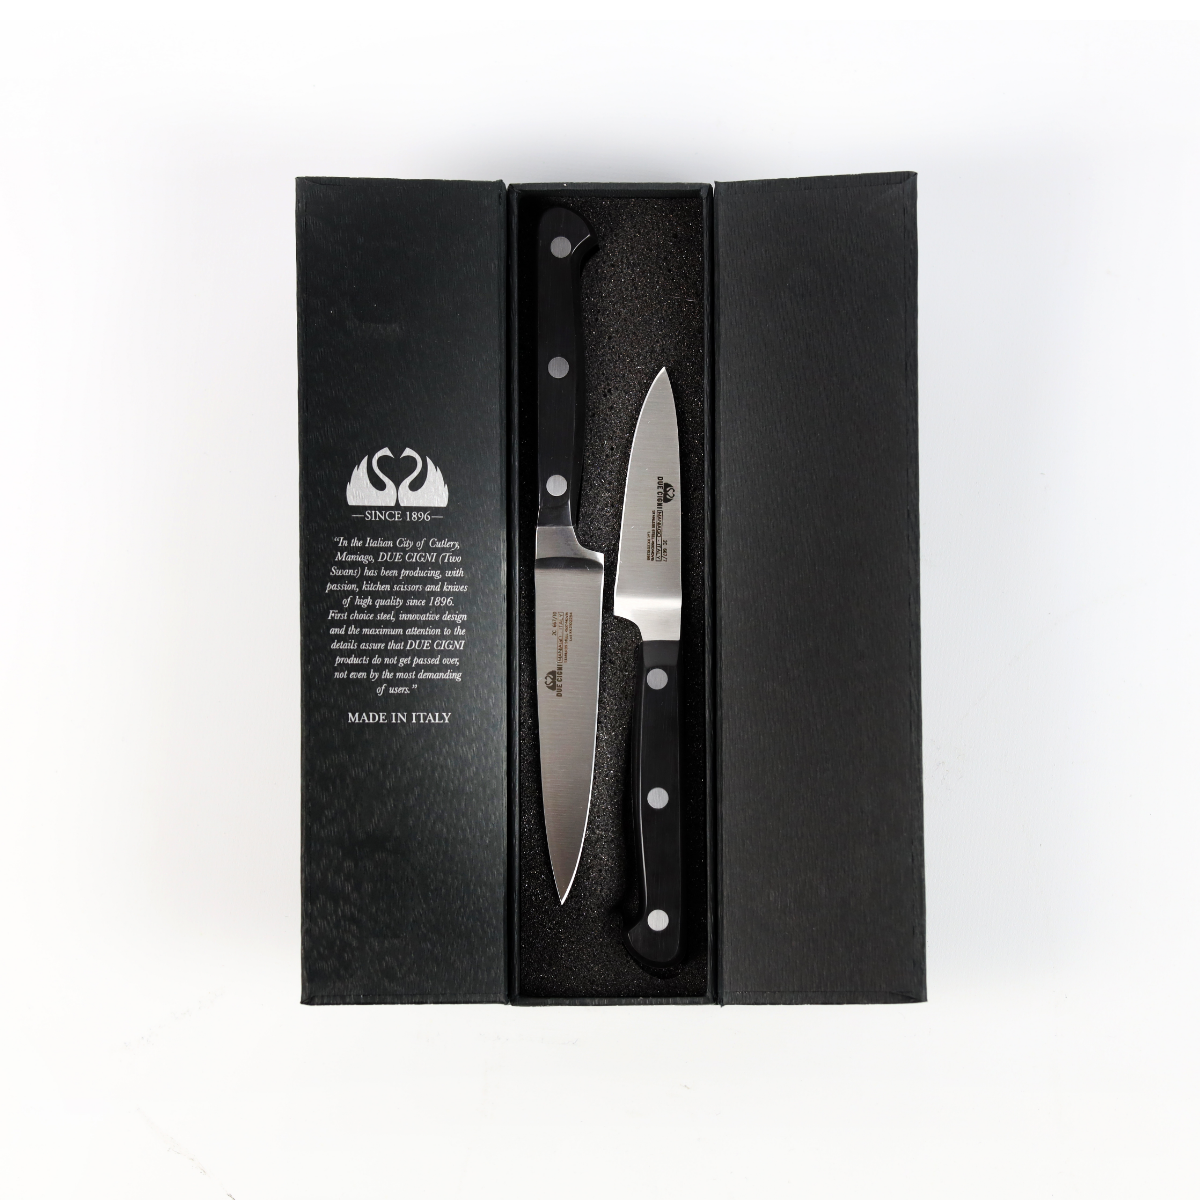 7 Chef Knife (Large)  DueCigni® – DueCigni Cutlery